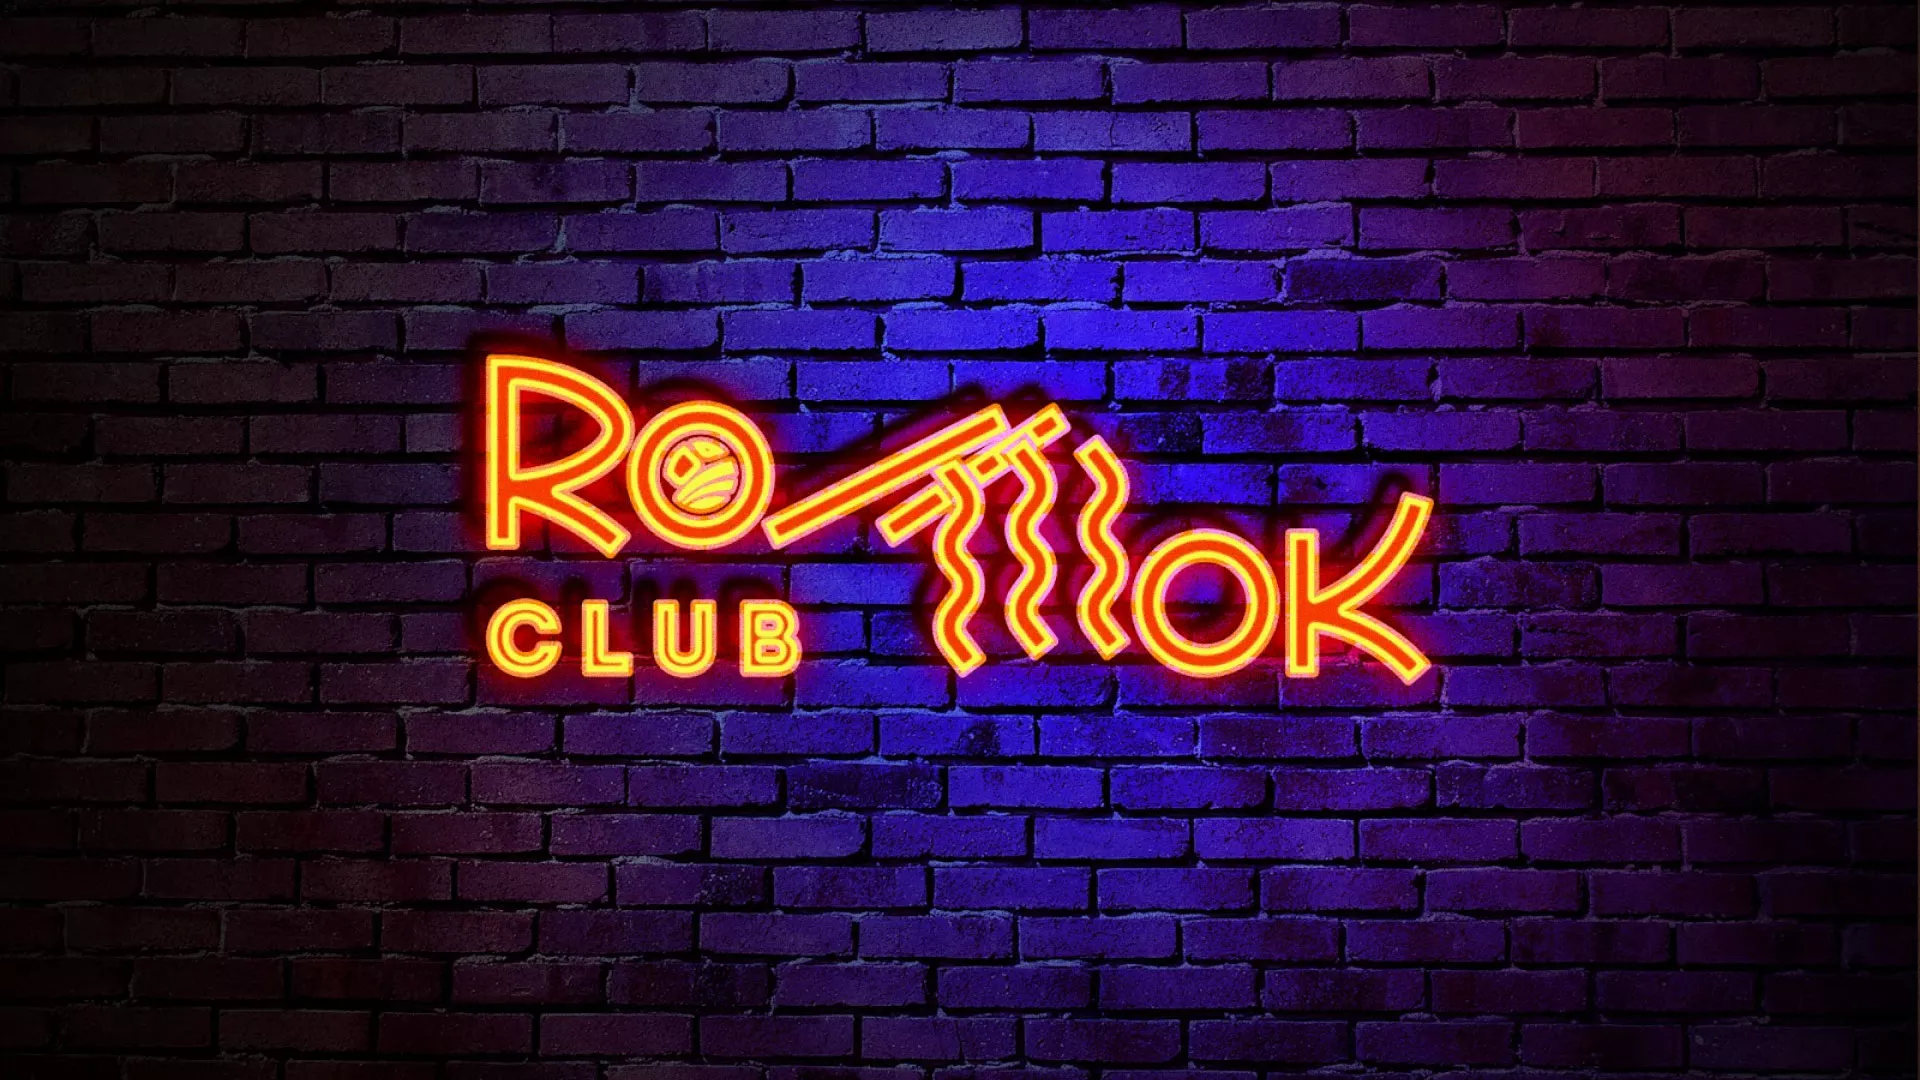 Разработка интерьерной вывески суши-бара «Roll Wok Club» в Костомукше